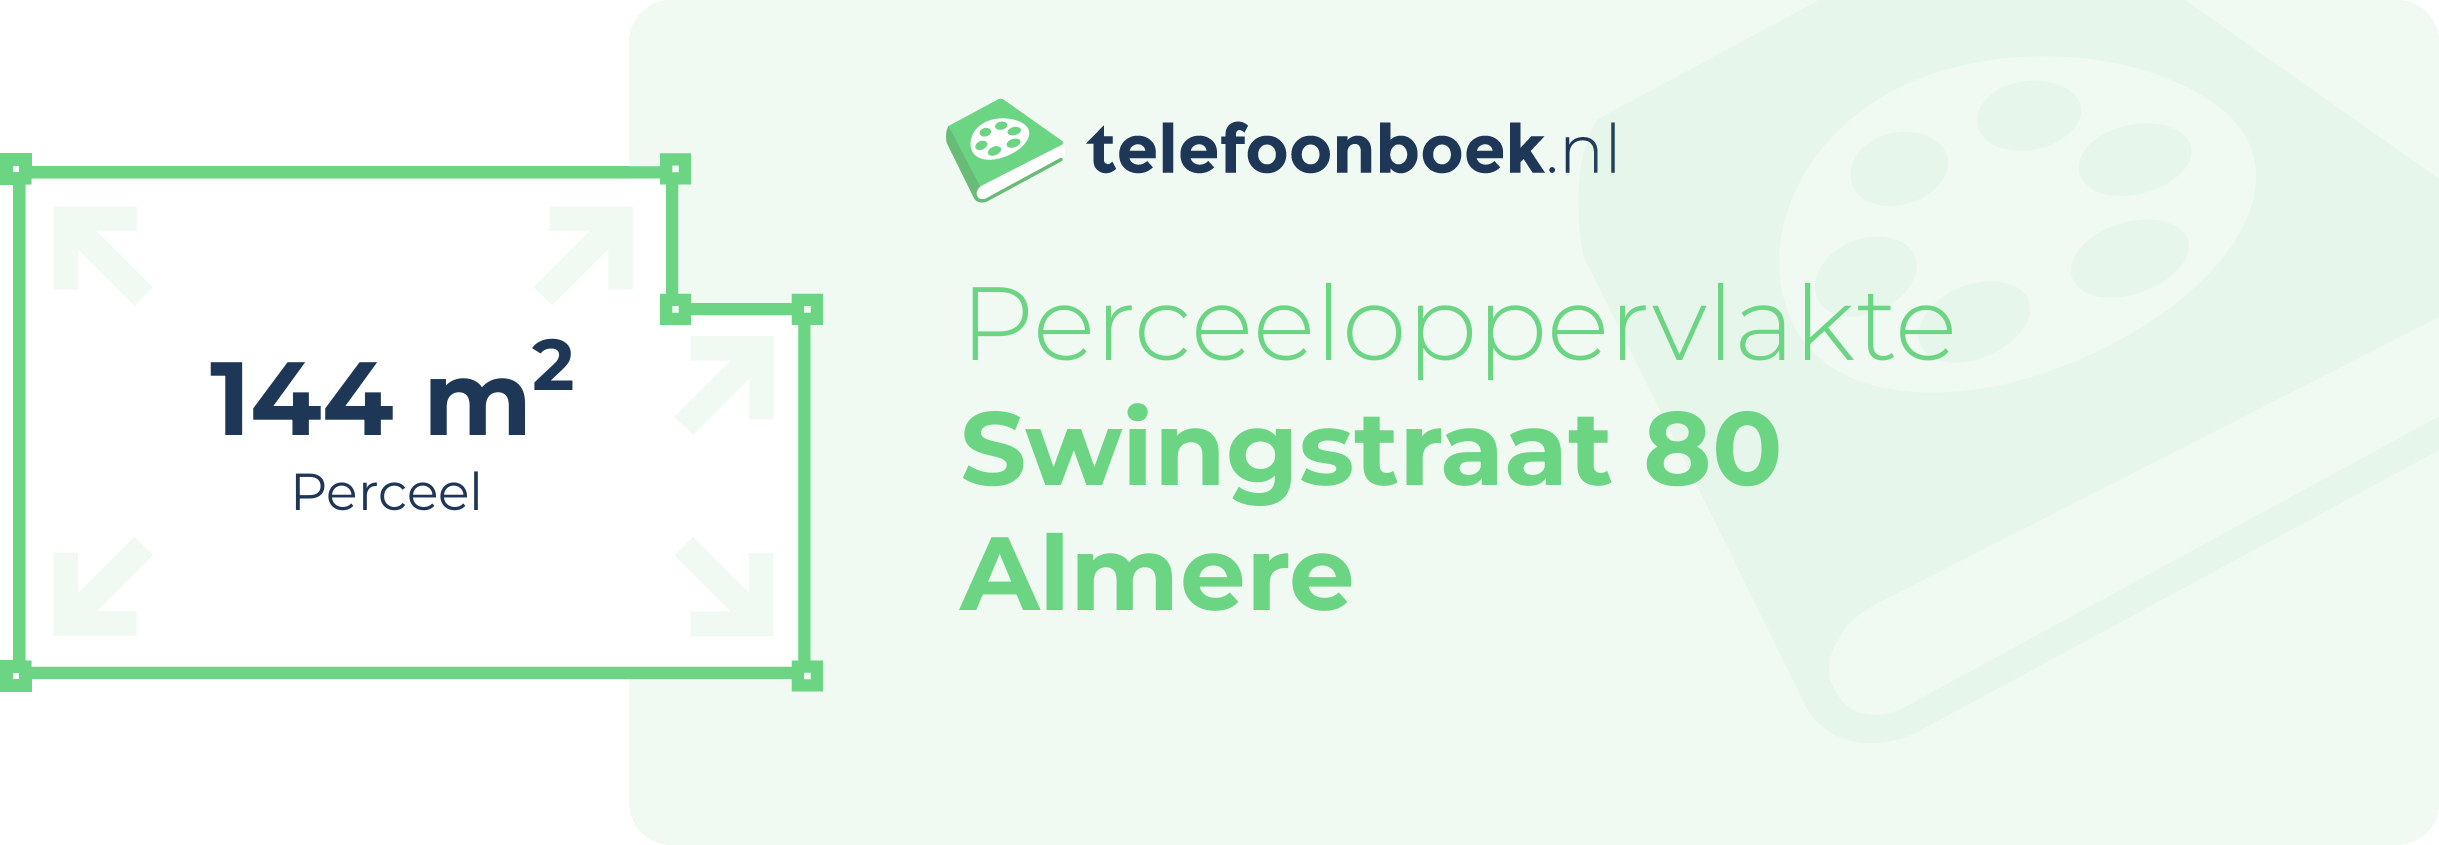 Perceeloppervlakte Swingstraat 80 Almere